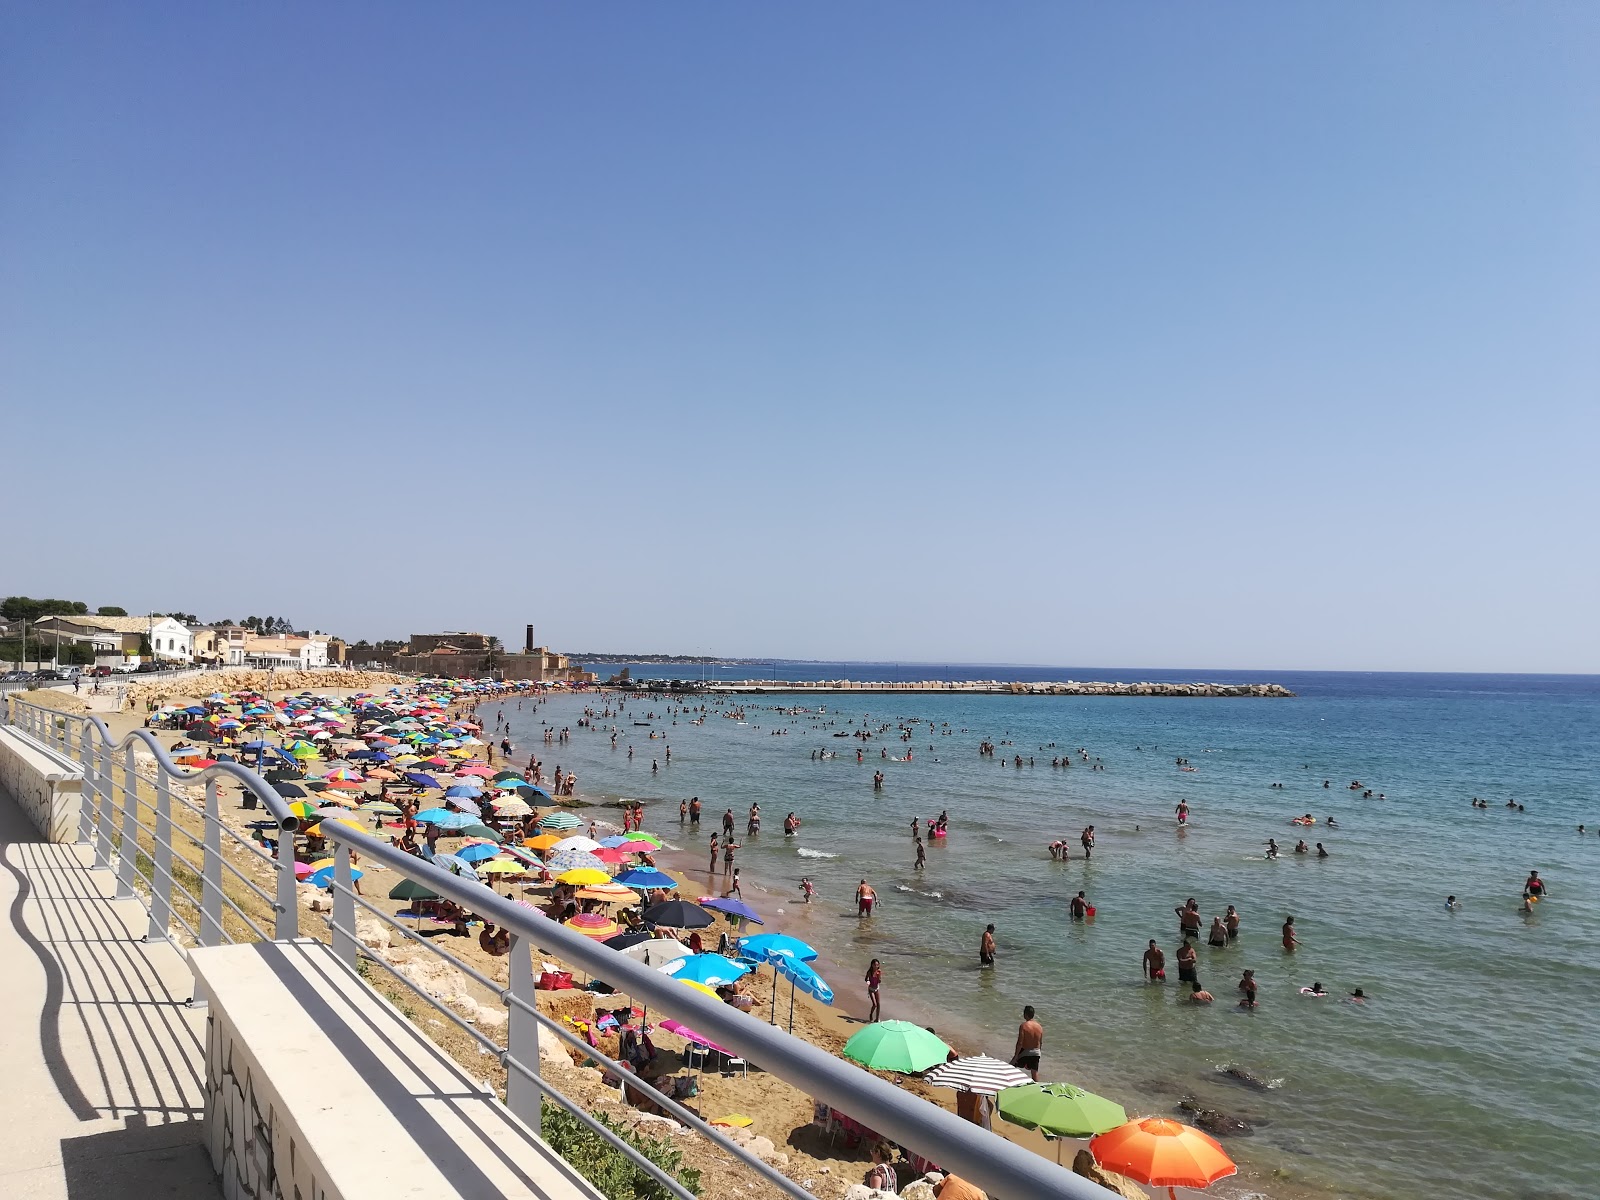 Foto von Spiaggia Di Avola - beliebter Ort unter Entspannungskennern